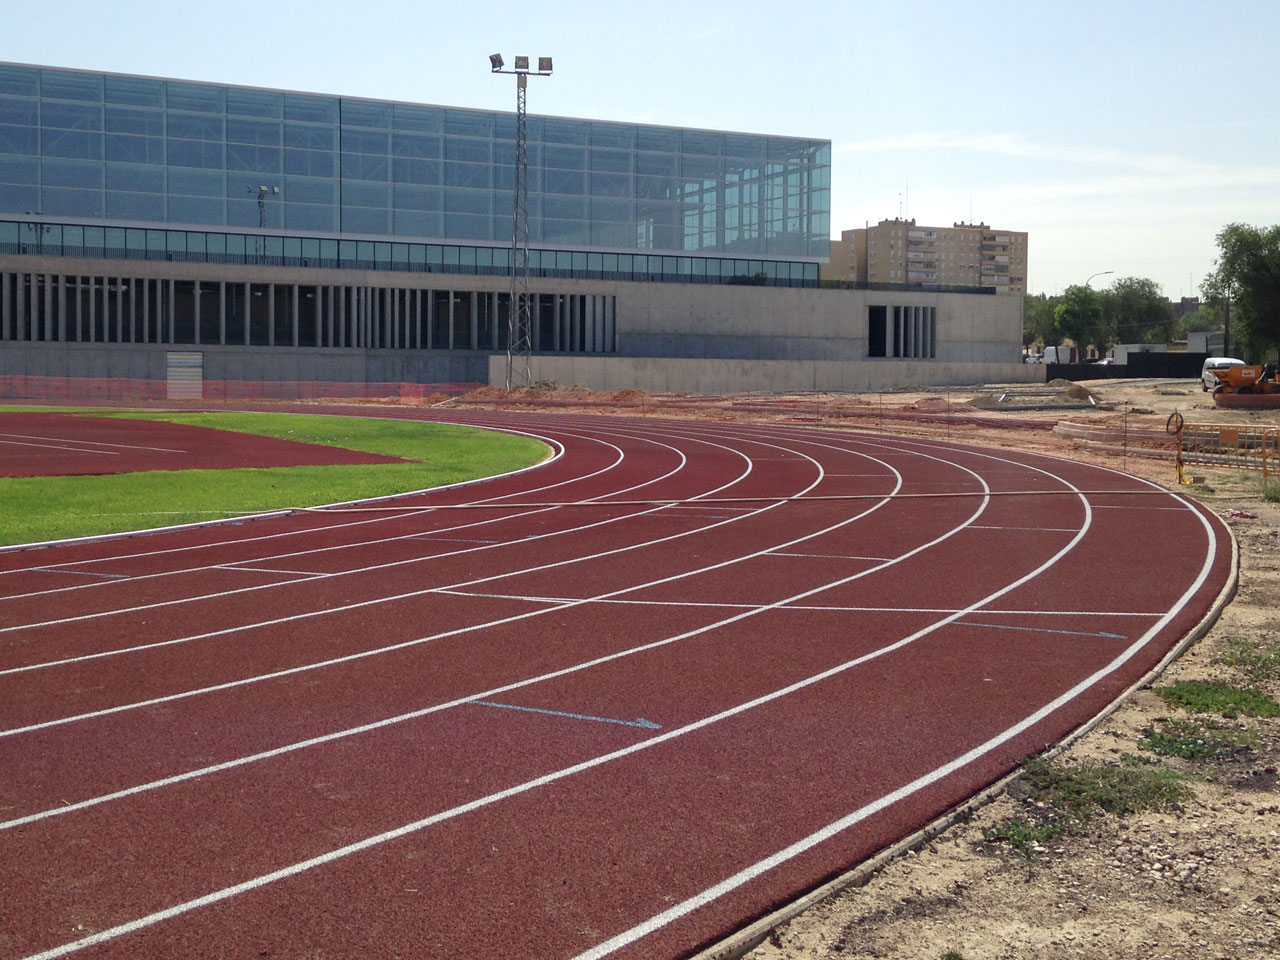 Obras de mejora y ampliación de las pistas deportivas al aire libre del complejo polideportivo “Andrés Torrejón” Móstoles